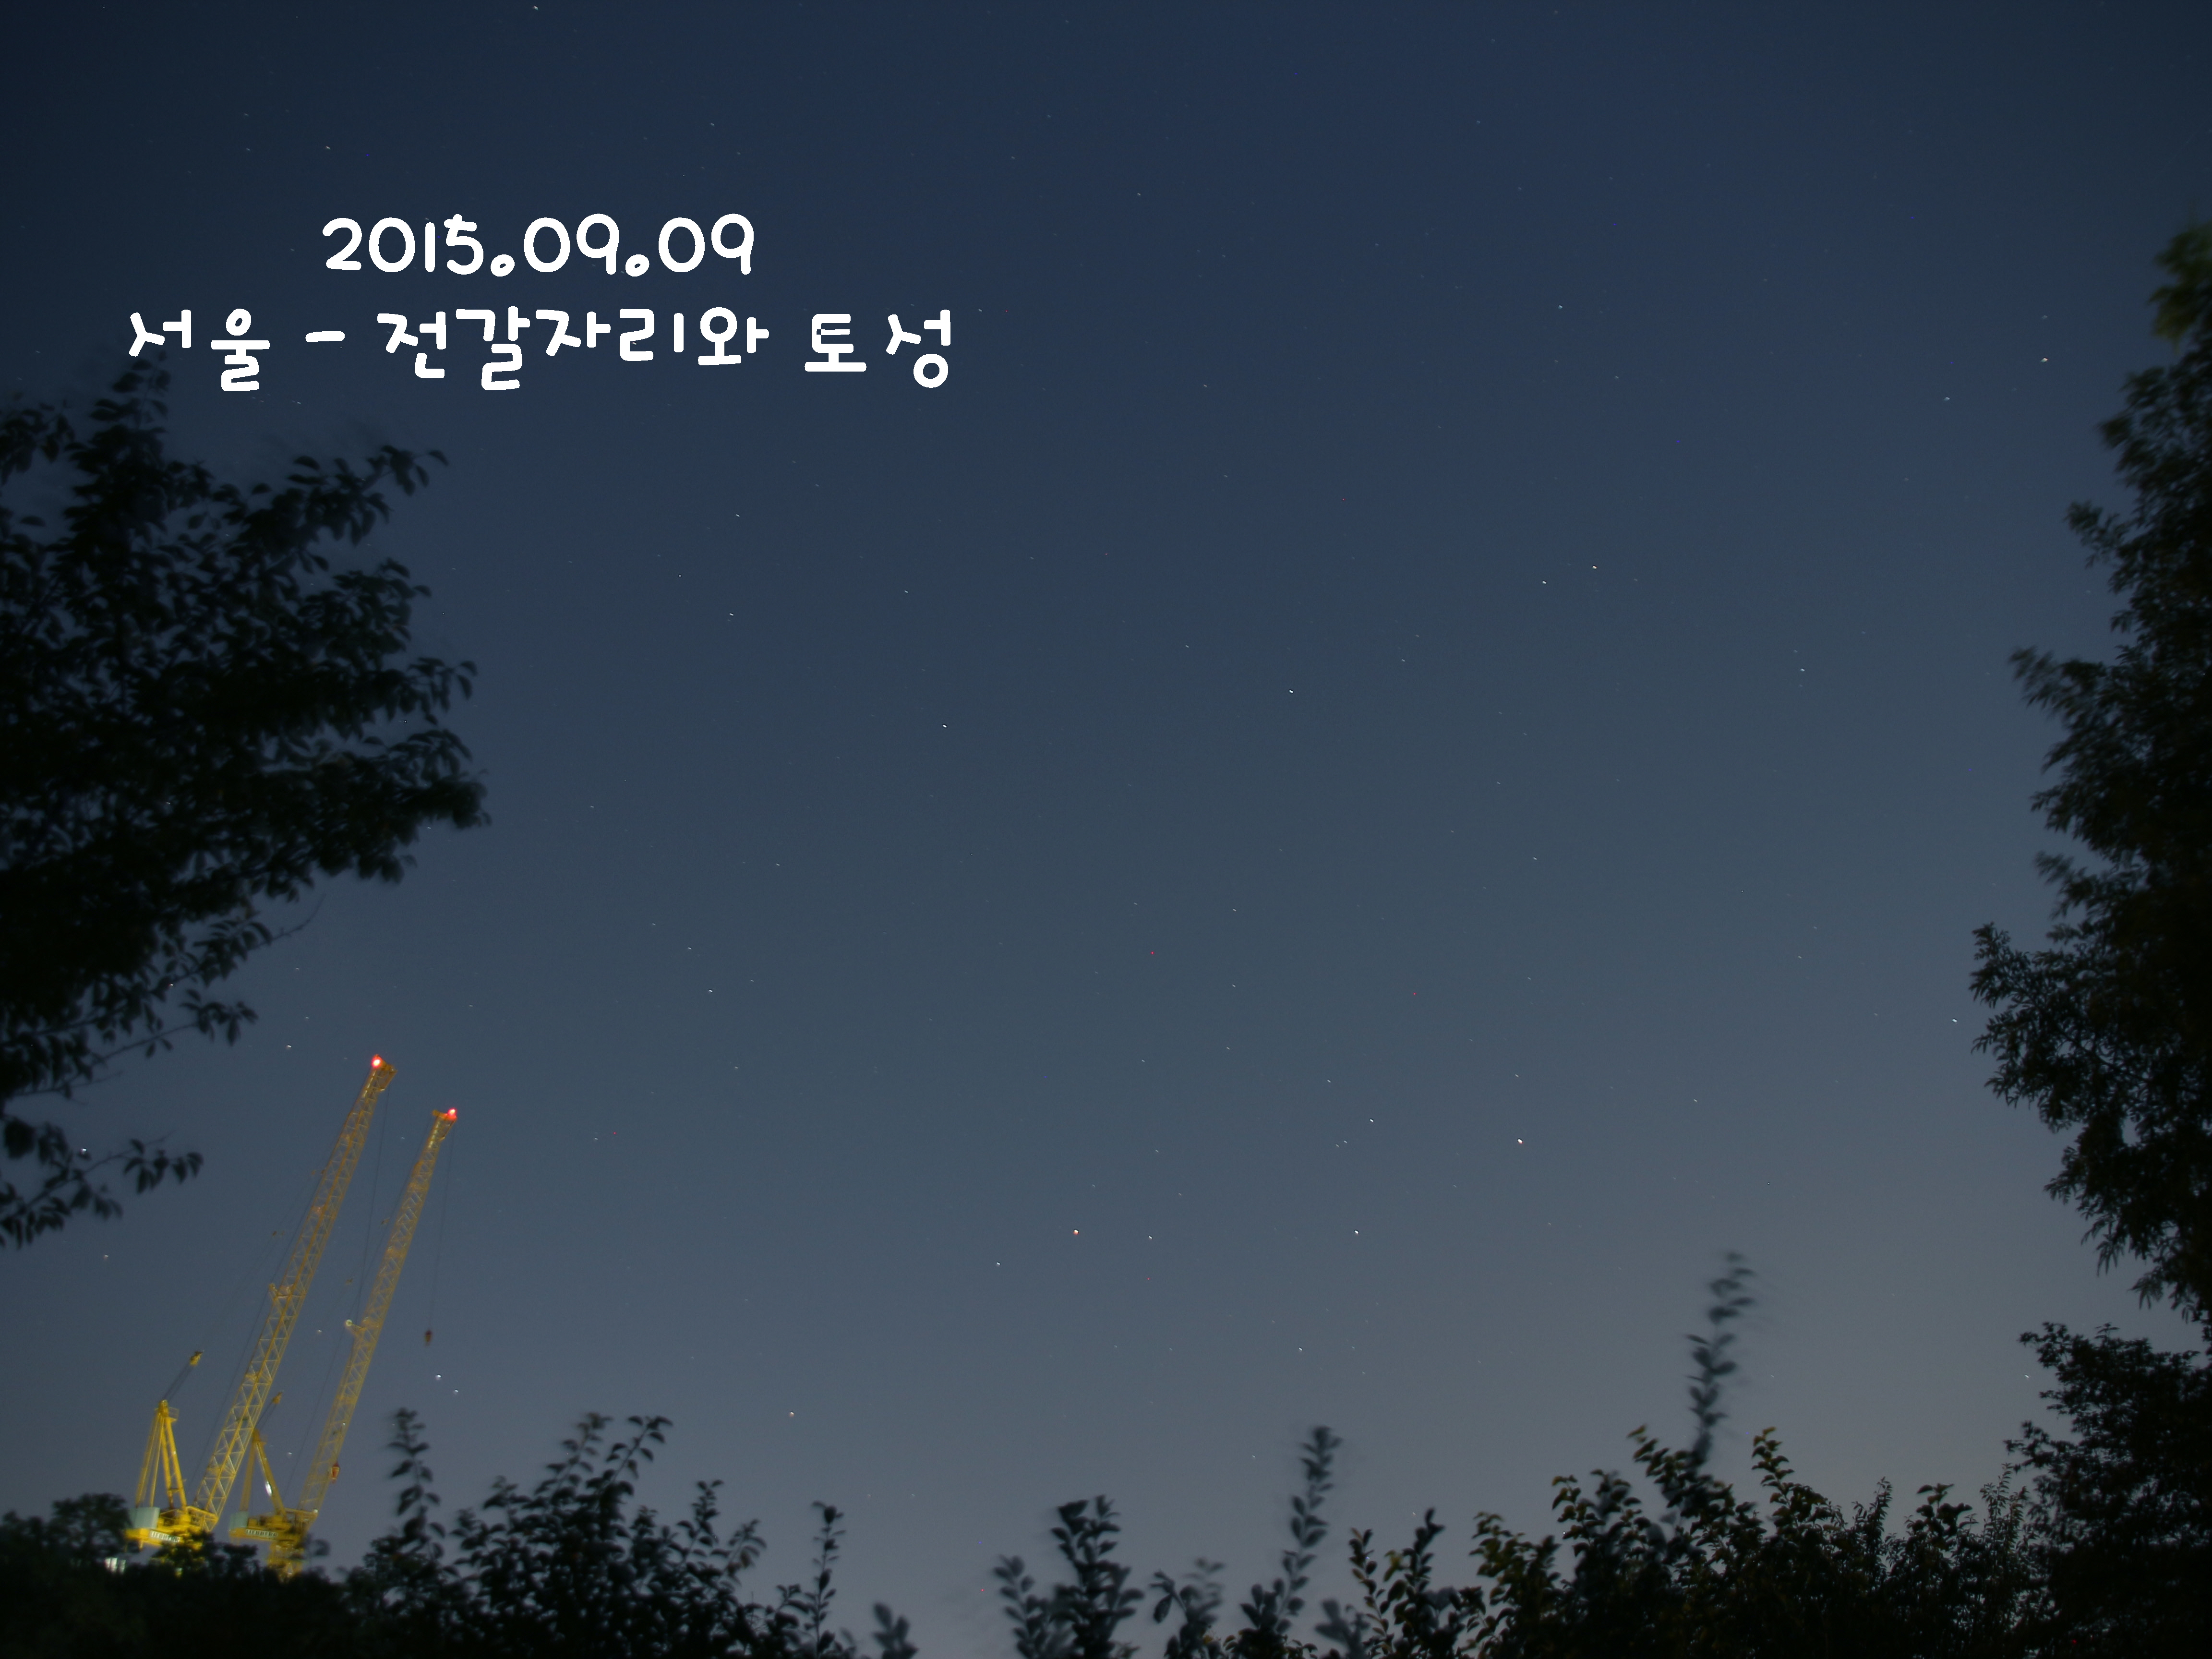 2015.09.09 전갈자리와 토성 - 이름.jpg